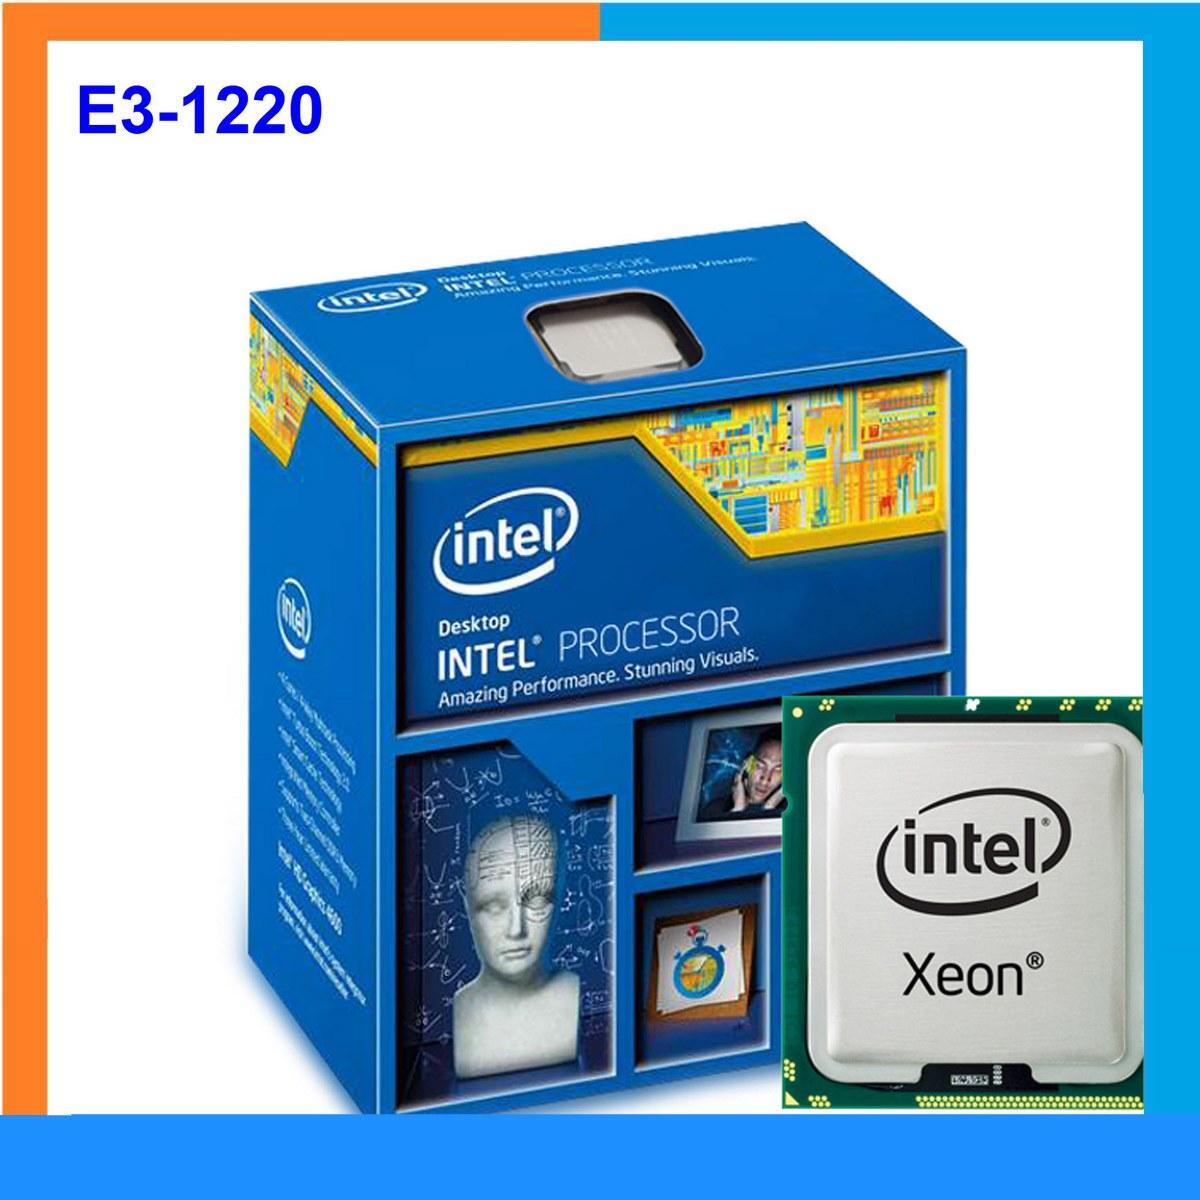 Bộ vi xử lý cho sever - CPU Intel Xeon E3-1220 - 3.1 GHz - 8MB Cache